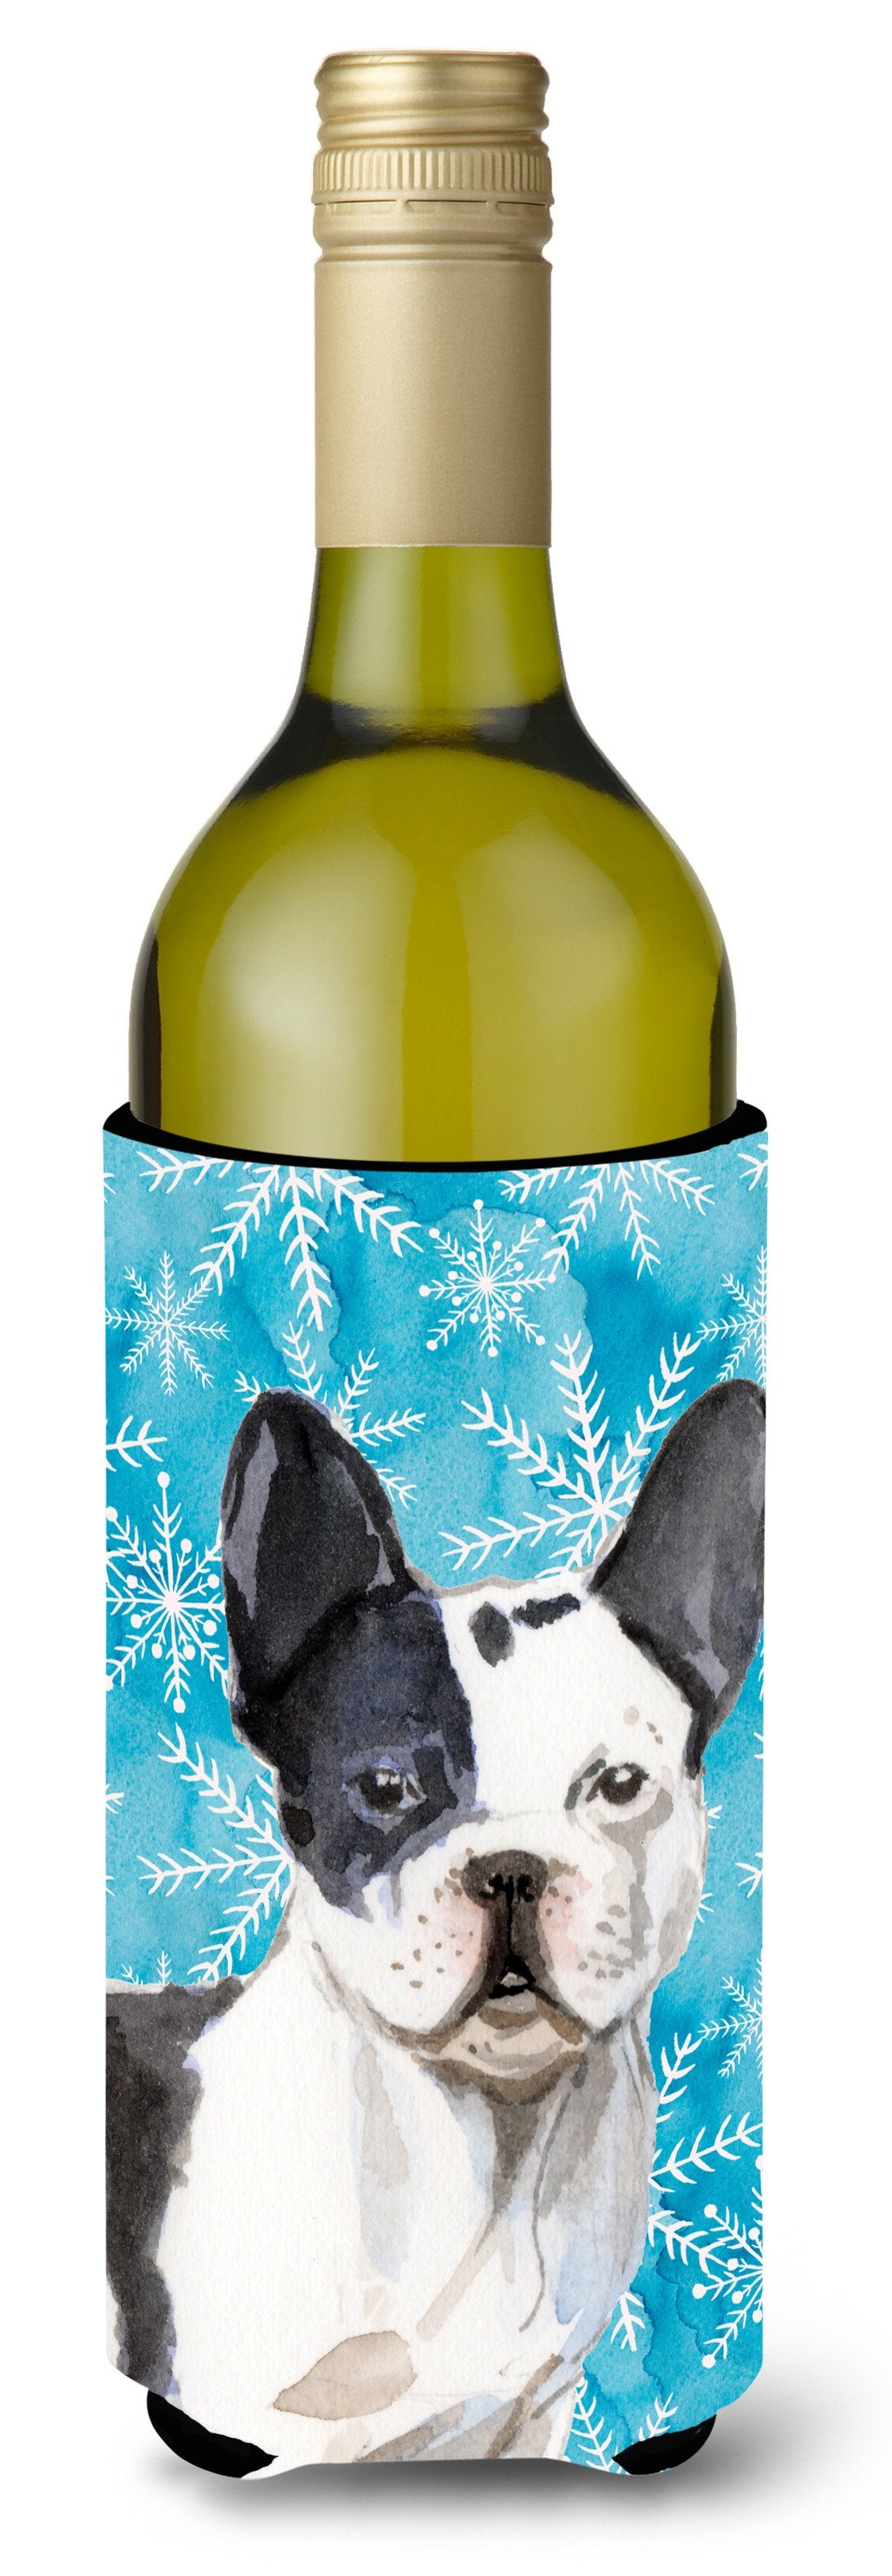 Black White French Bulldog Winter Wine Bottle Beverge Insulator Hugger BB9442LITERK by Caroline's Treasures